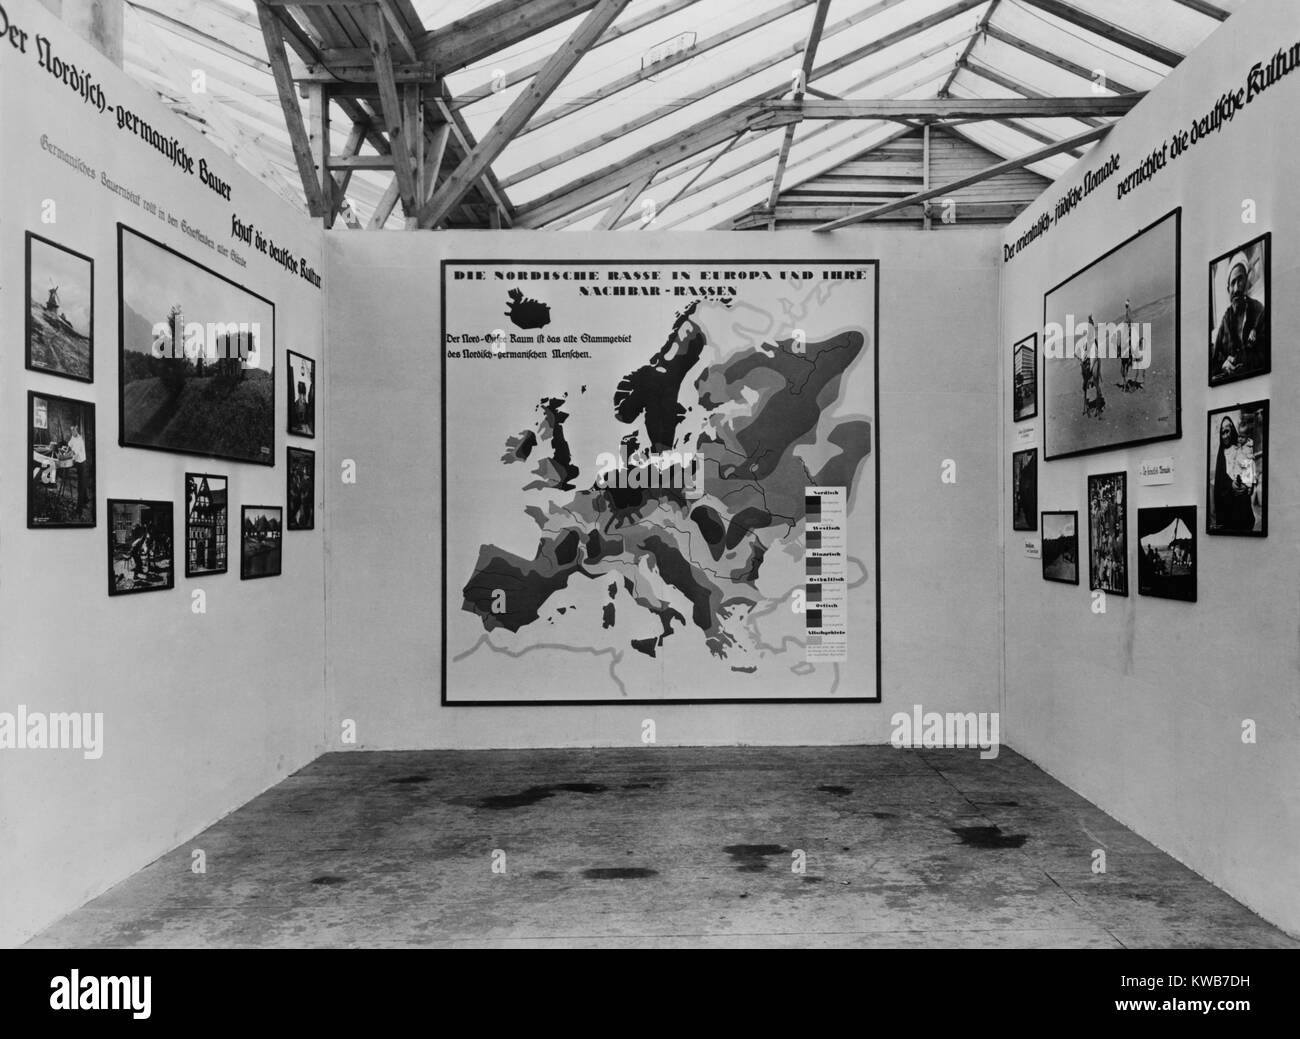 La propagande antisémite nazie en 1934 une exposition de photos sur les différentes "races". Dans le centre est une carte montrant les zones "raciaux". Sur la gauche sont des images de 'Nordic-Germanic les agriculteurs qui protègent la culture allemande", et à droite, 'Oriental-Jewish nomades qui détruisent la culture allemande". (BSLOC 2014 8 110) Banque D'Images